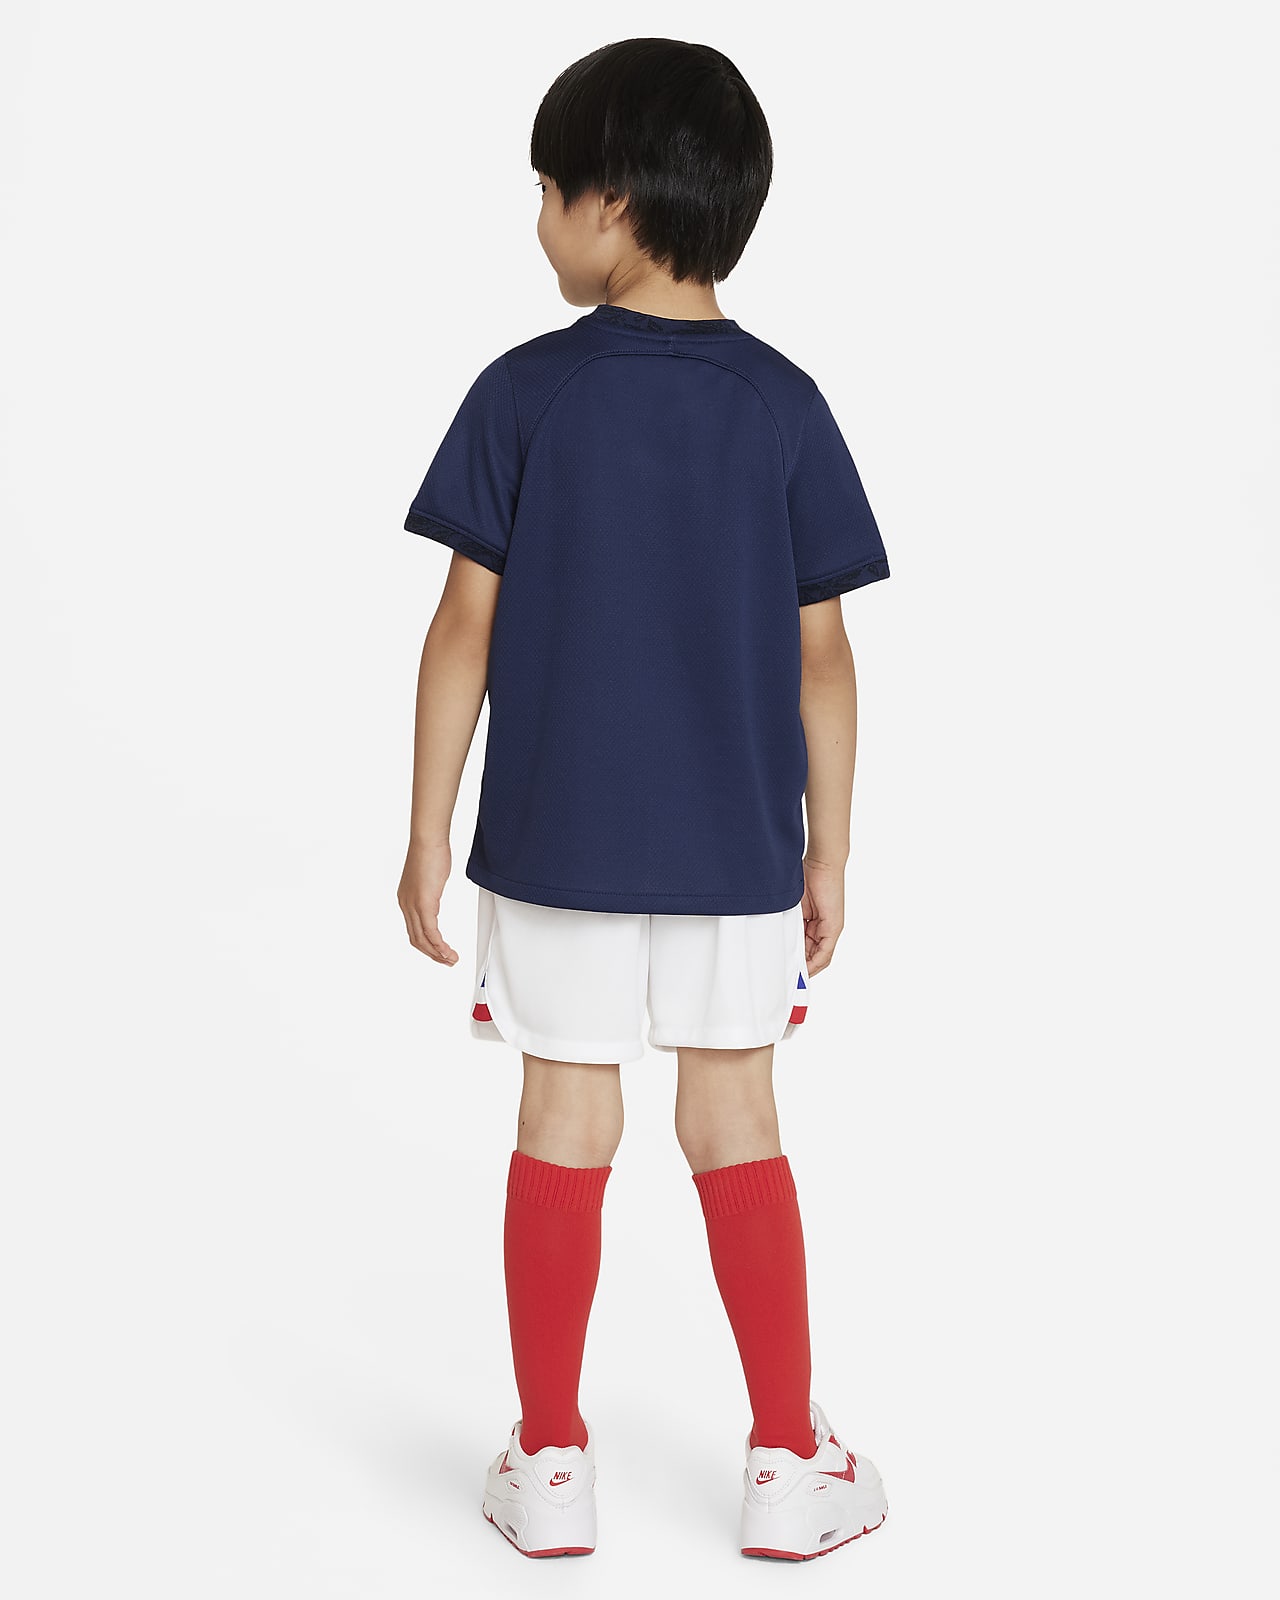 Chaussettes de foot enfant